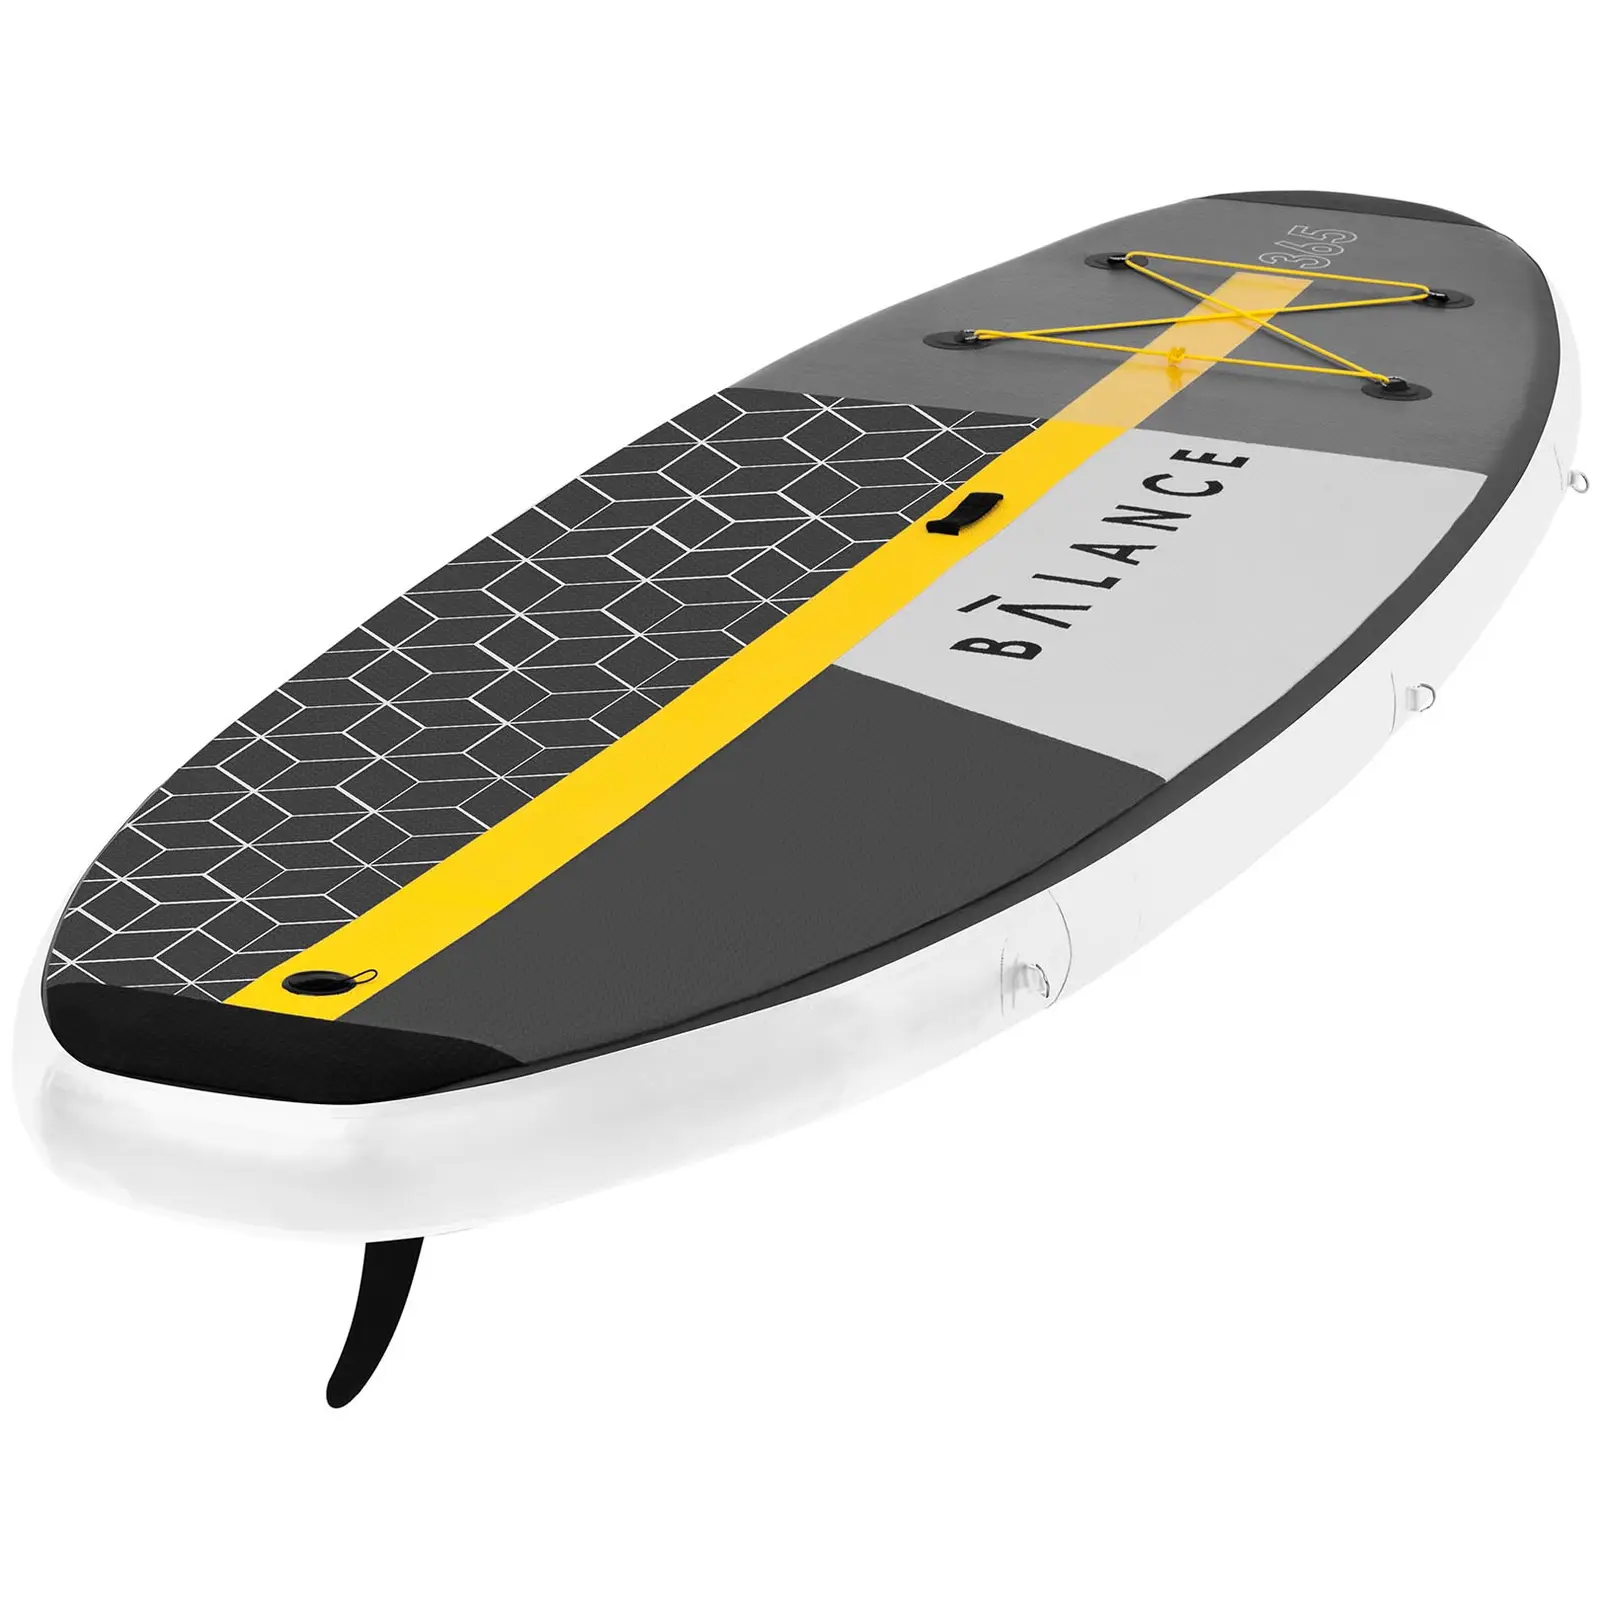 Paddle-board - 230 kg - 365 x 110 x 15 cm